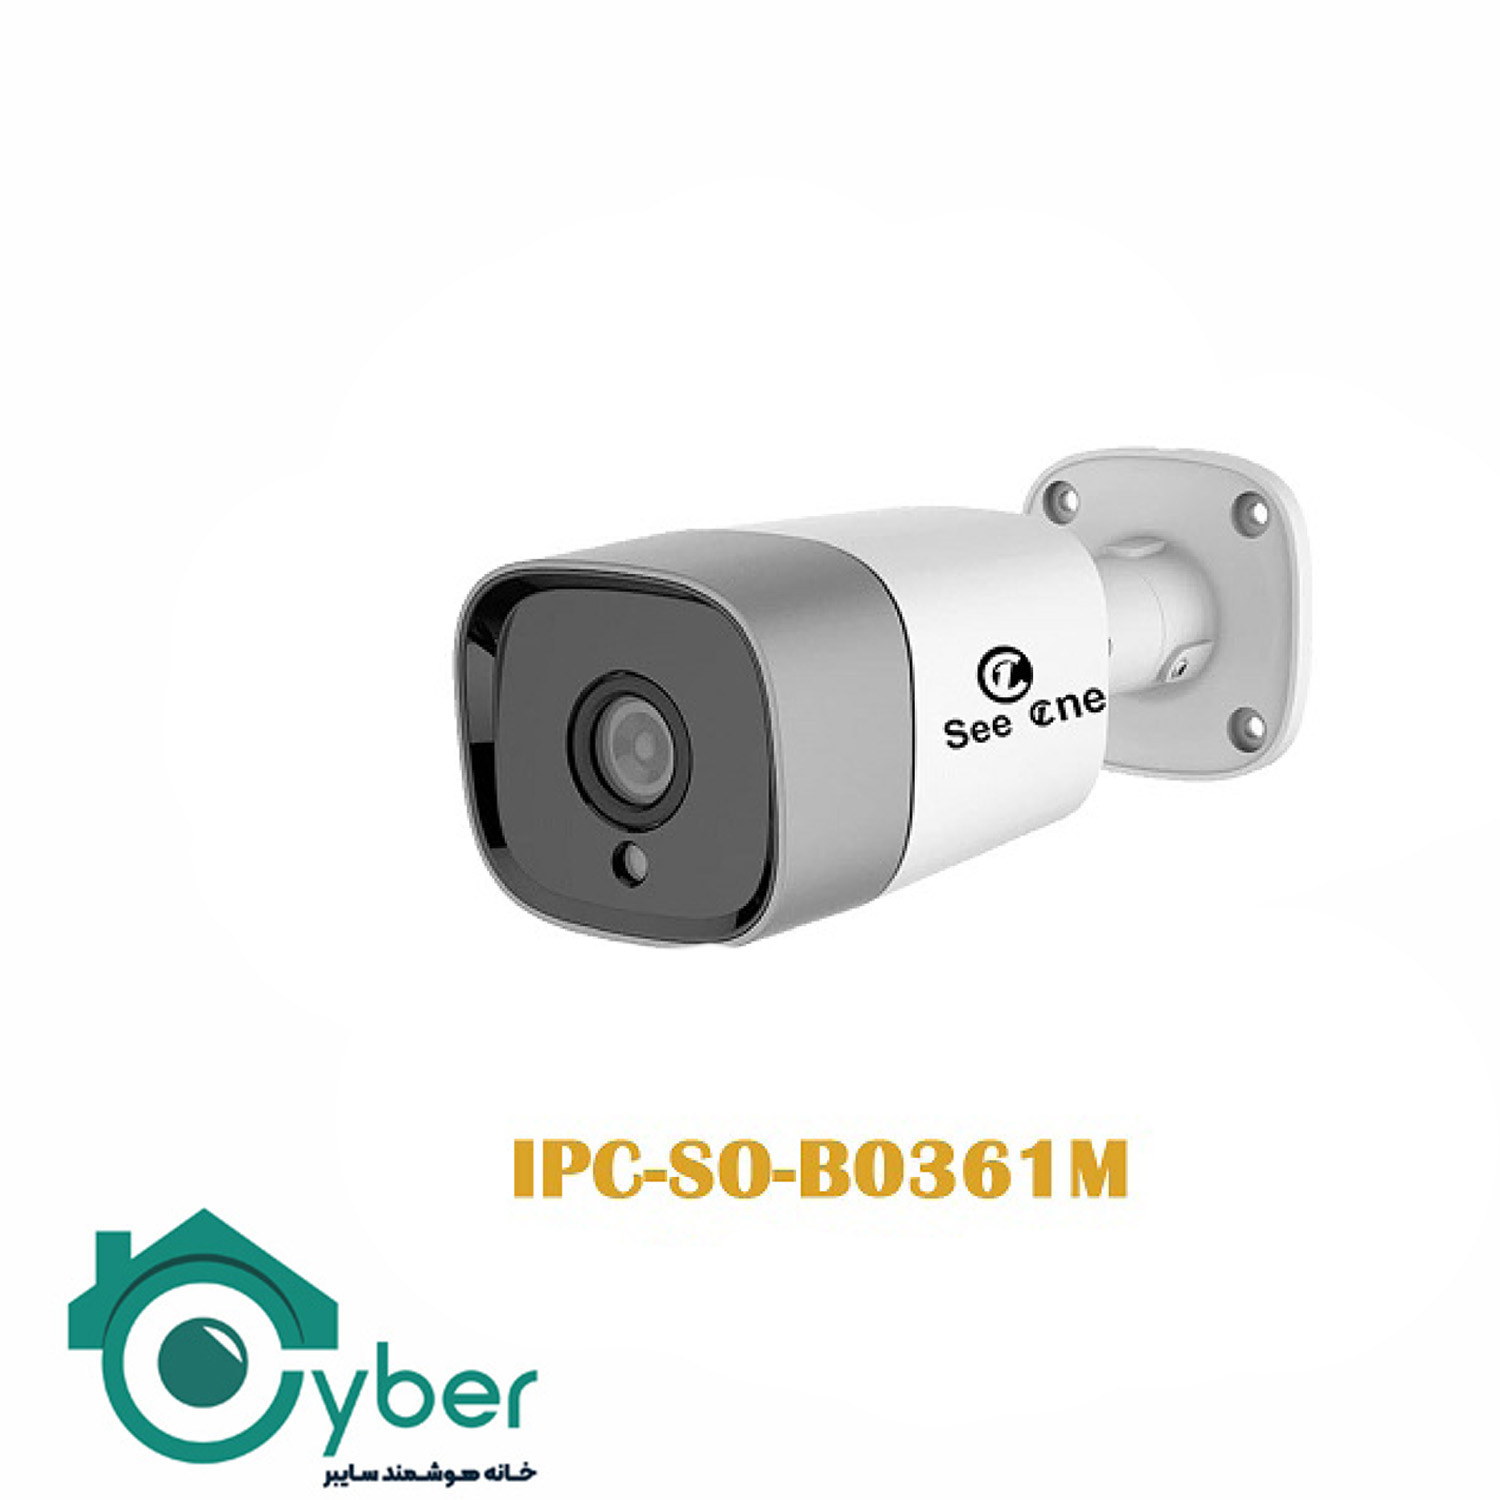 دوربین تحت شبکه See one مدل IPC-S0-B0361M - سیوان